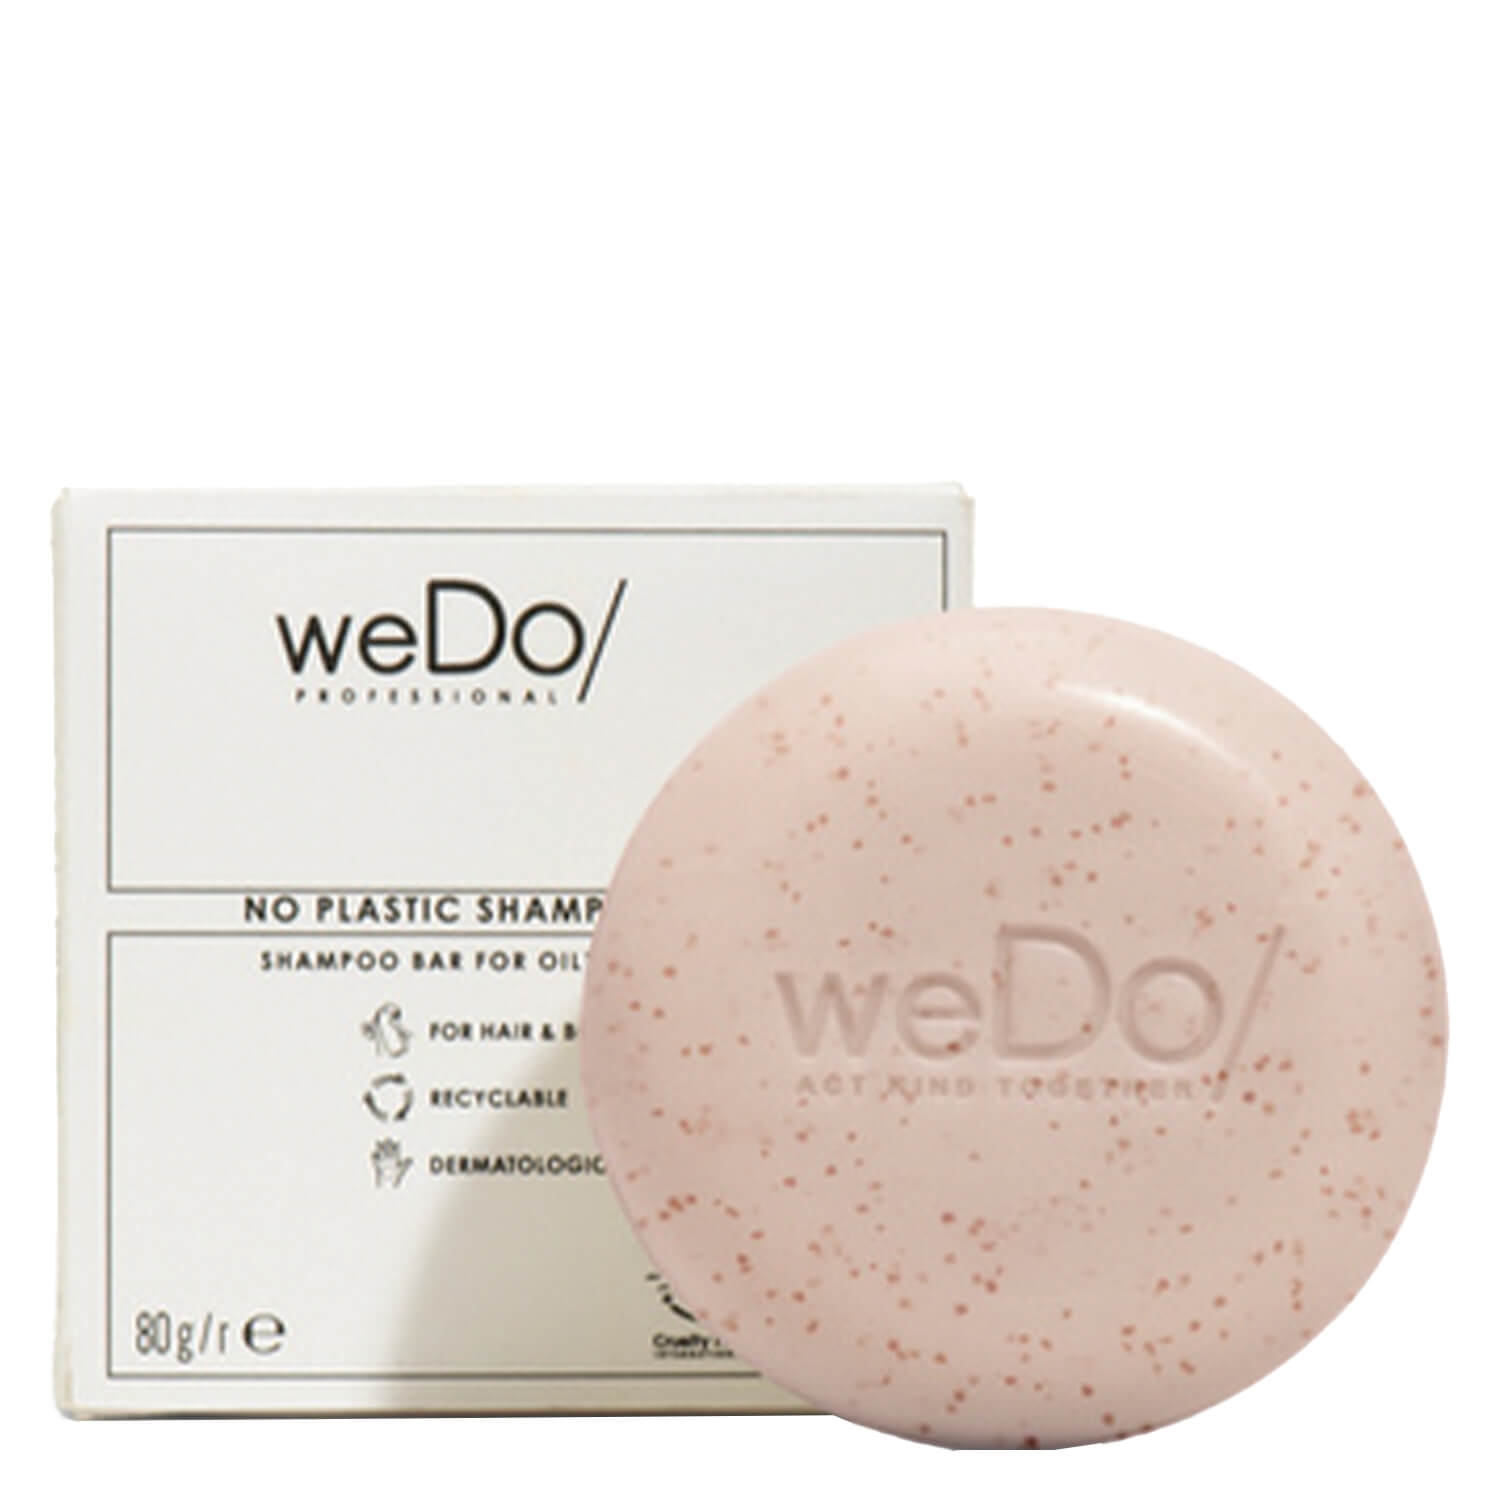 Produktbild von weDo/ - Purify Solid No Plastic Shampoo